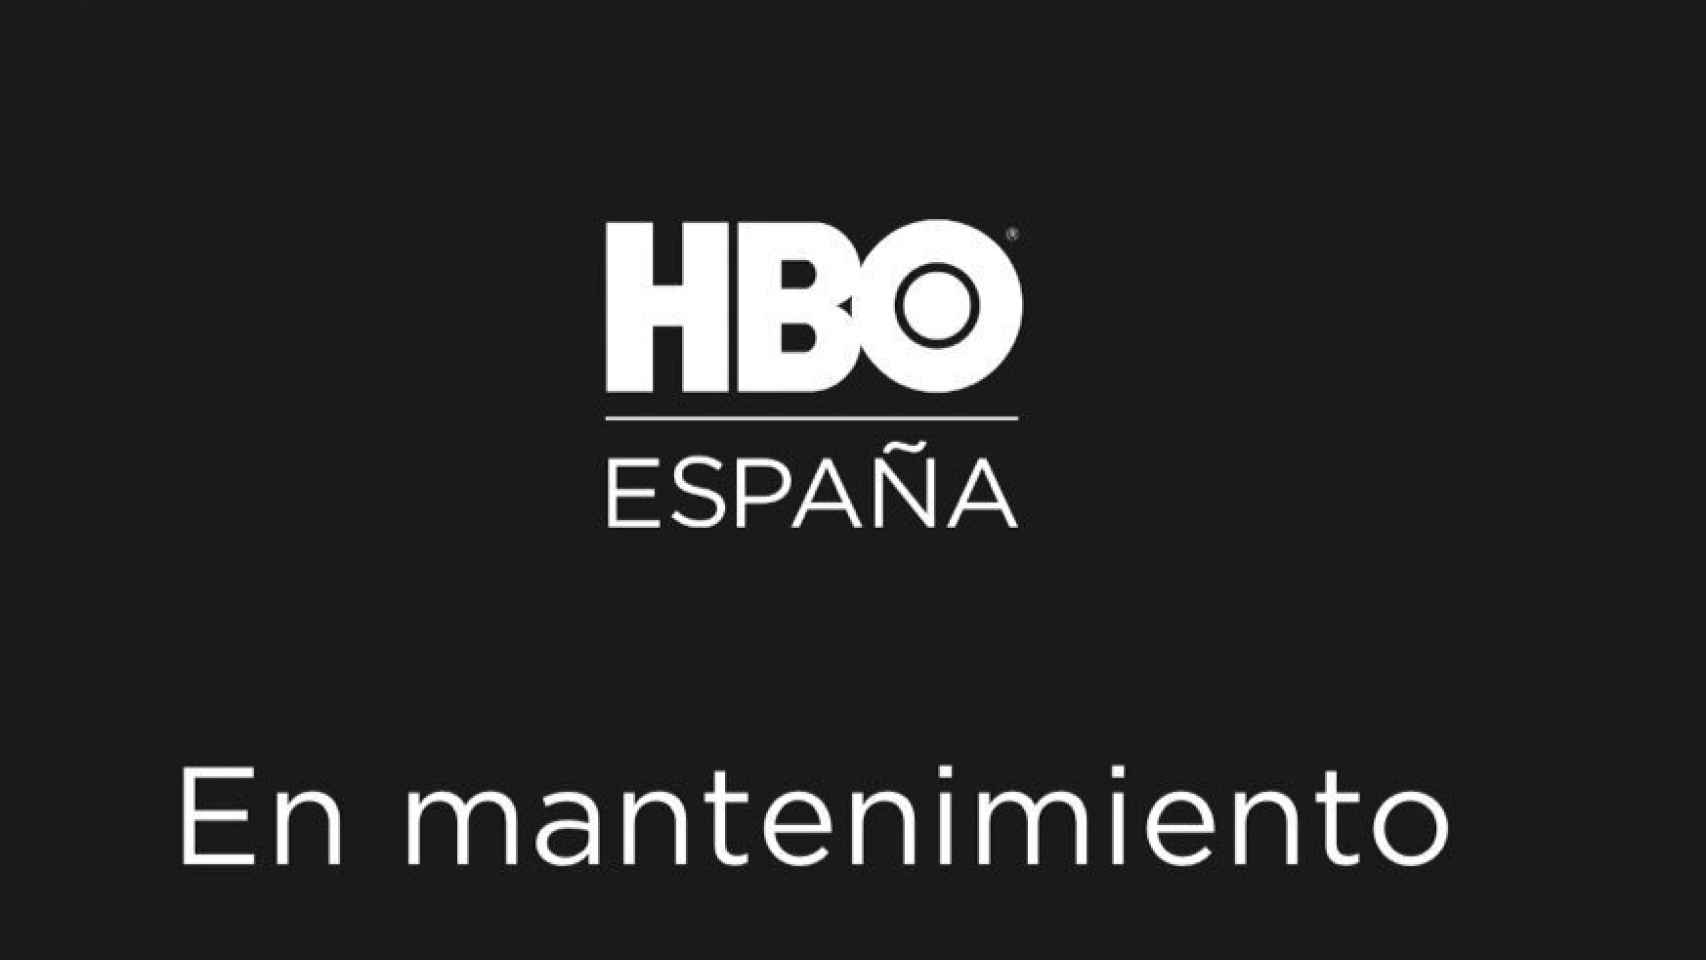 HBO ha entrado en modo mantenimiento en el momento del estreno en España.